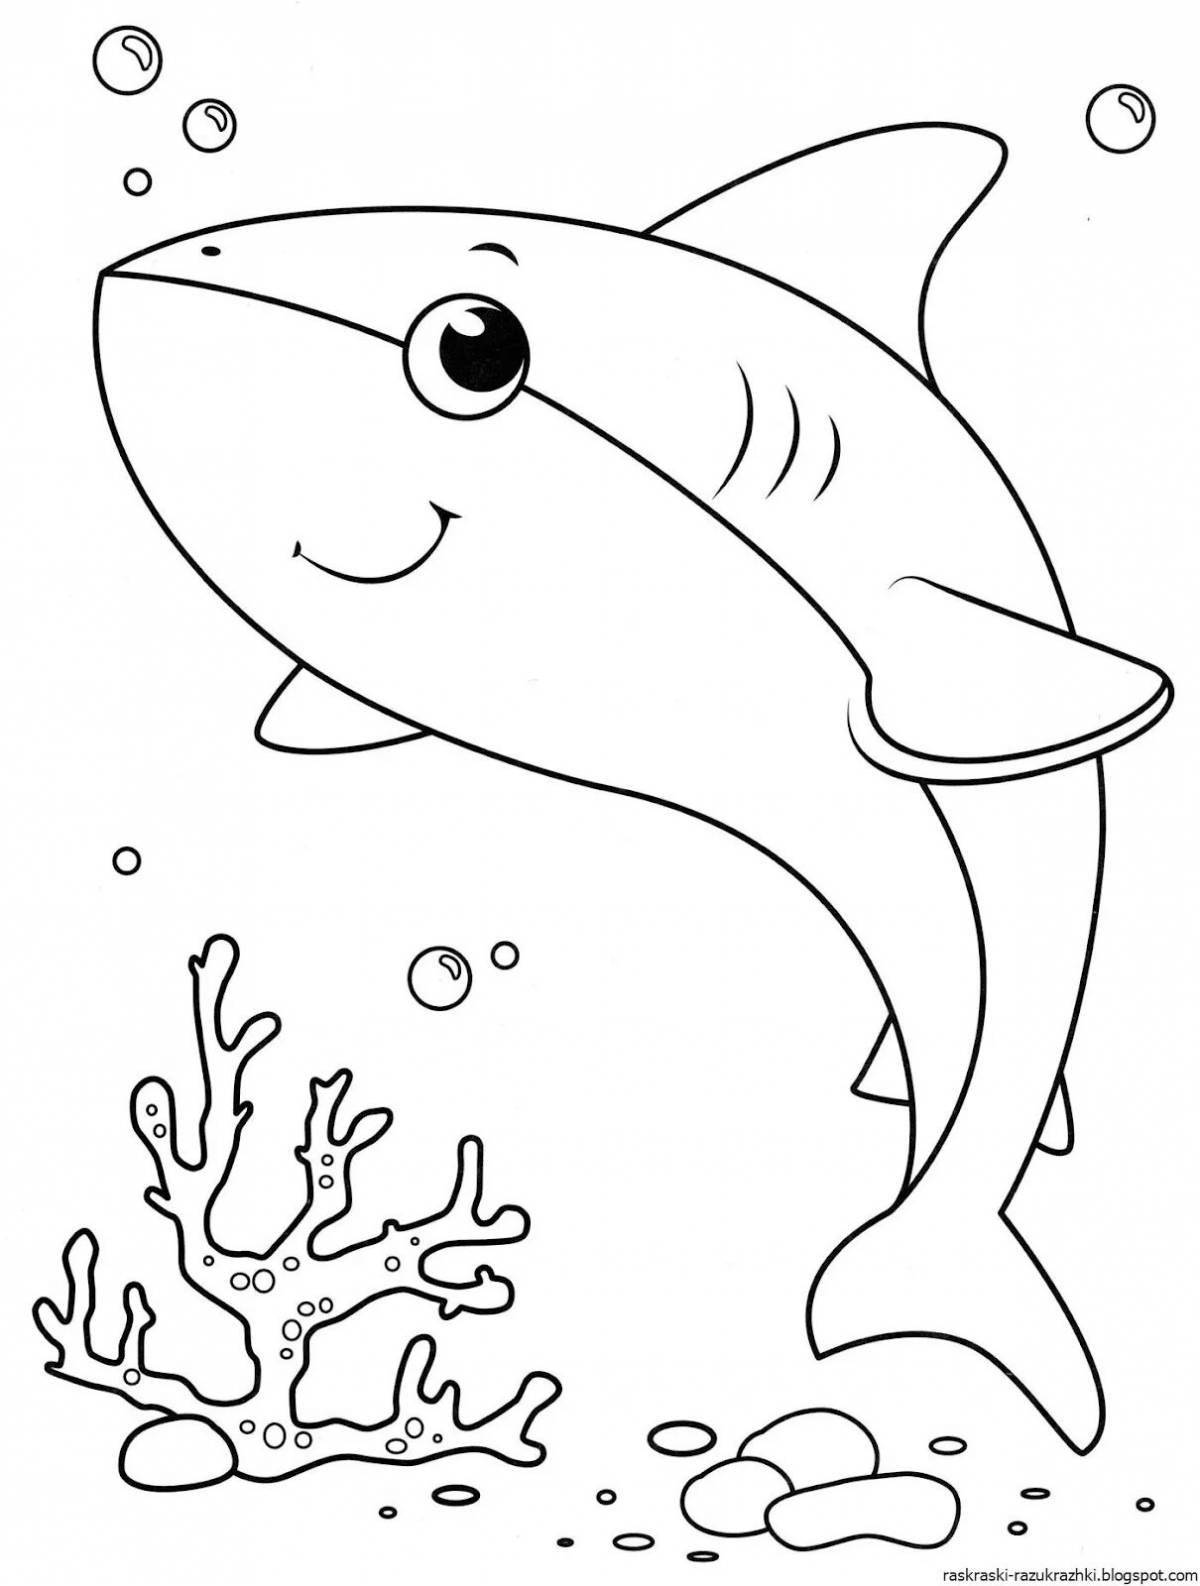 Развлекательная раскраска акулы для детей 4-5 лет